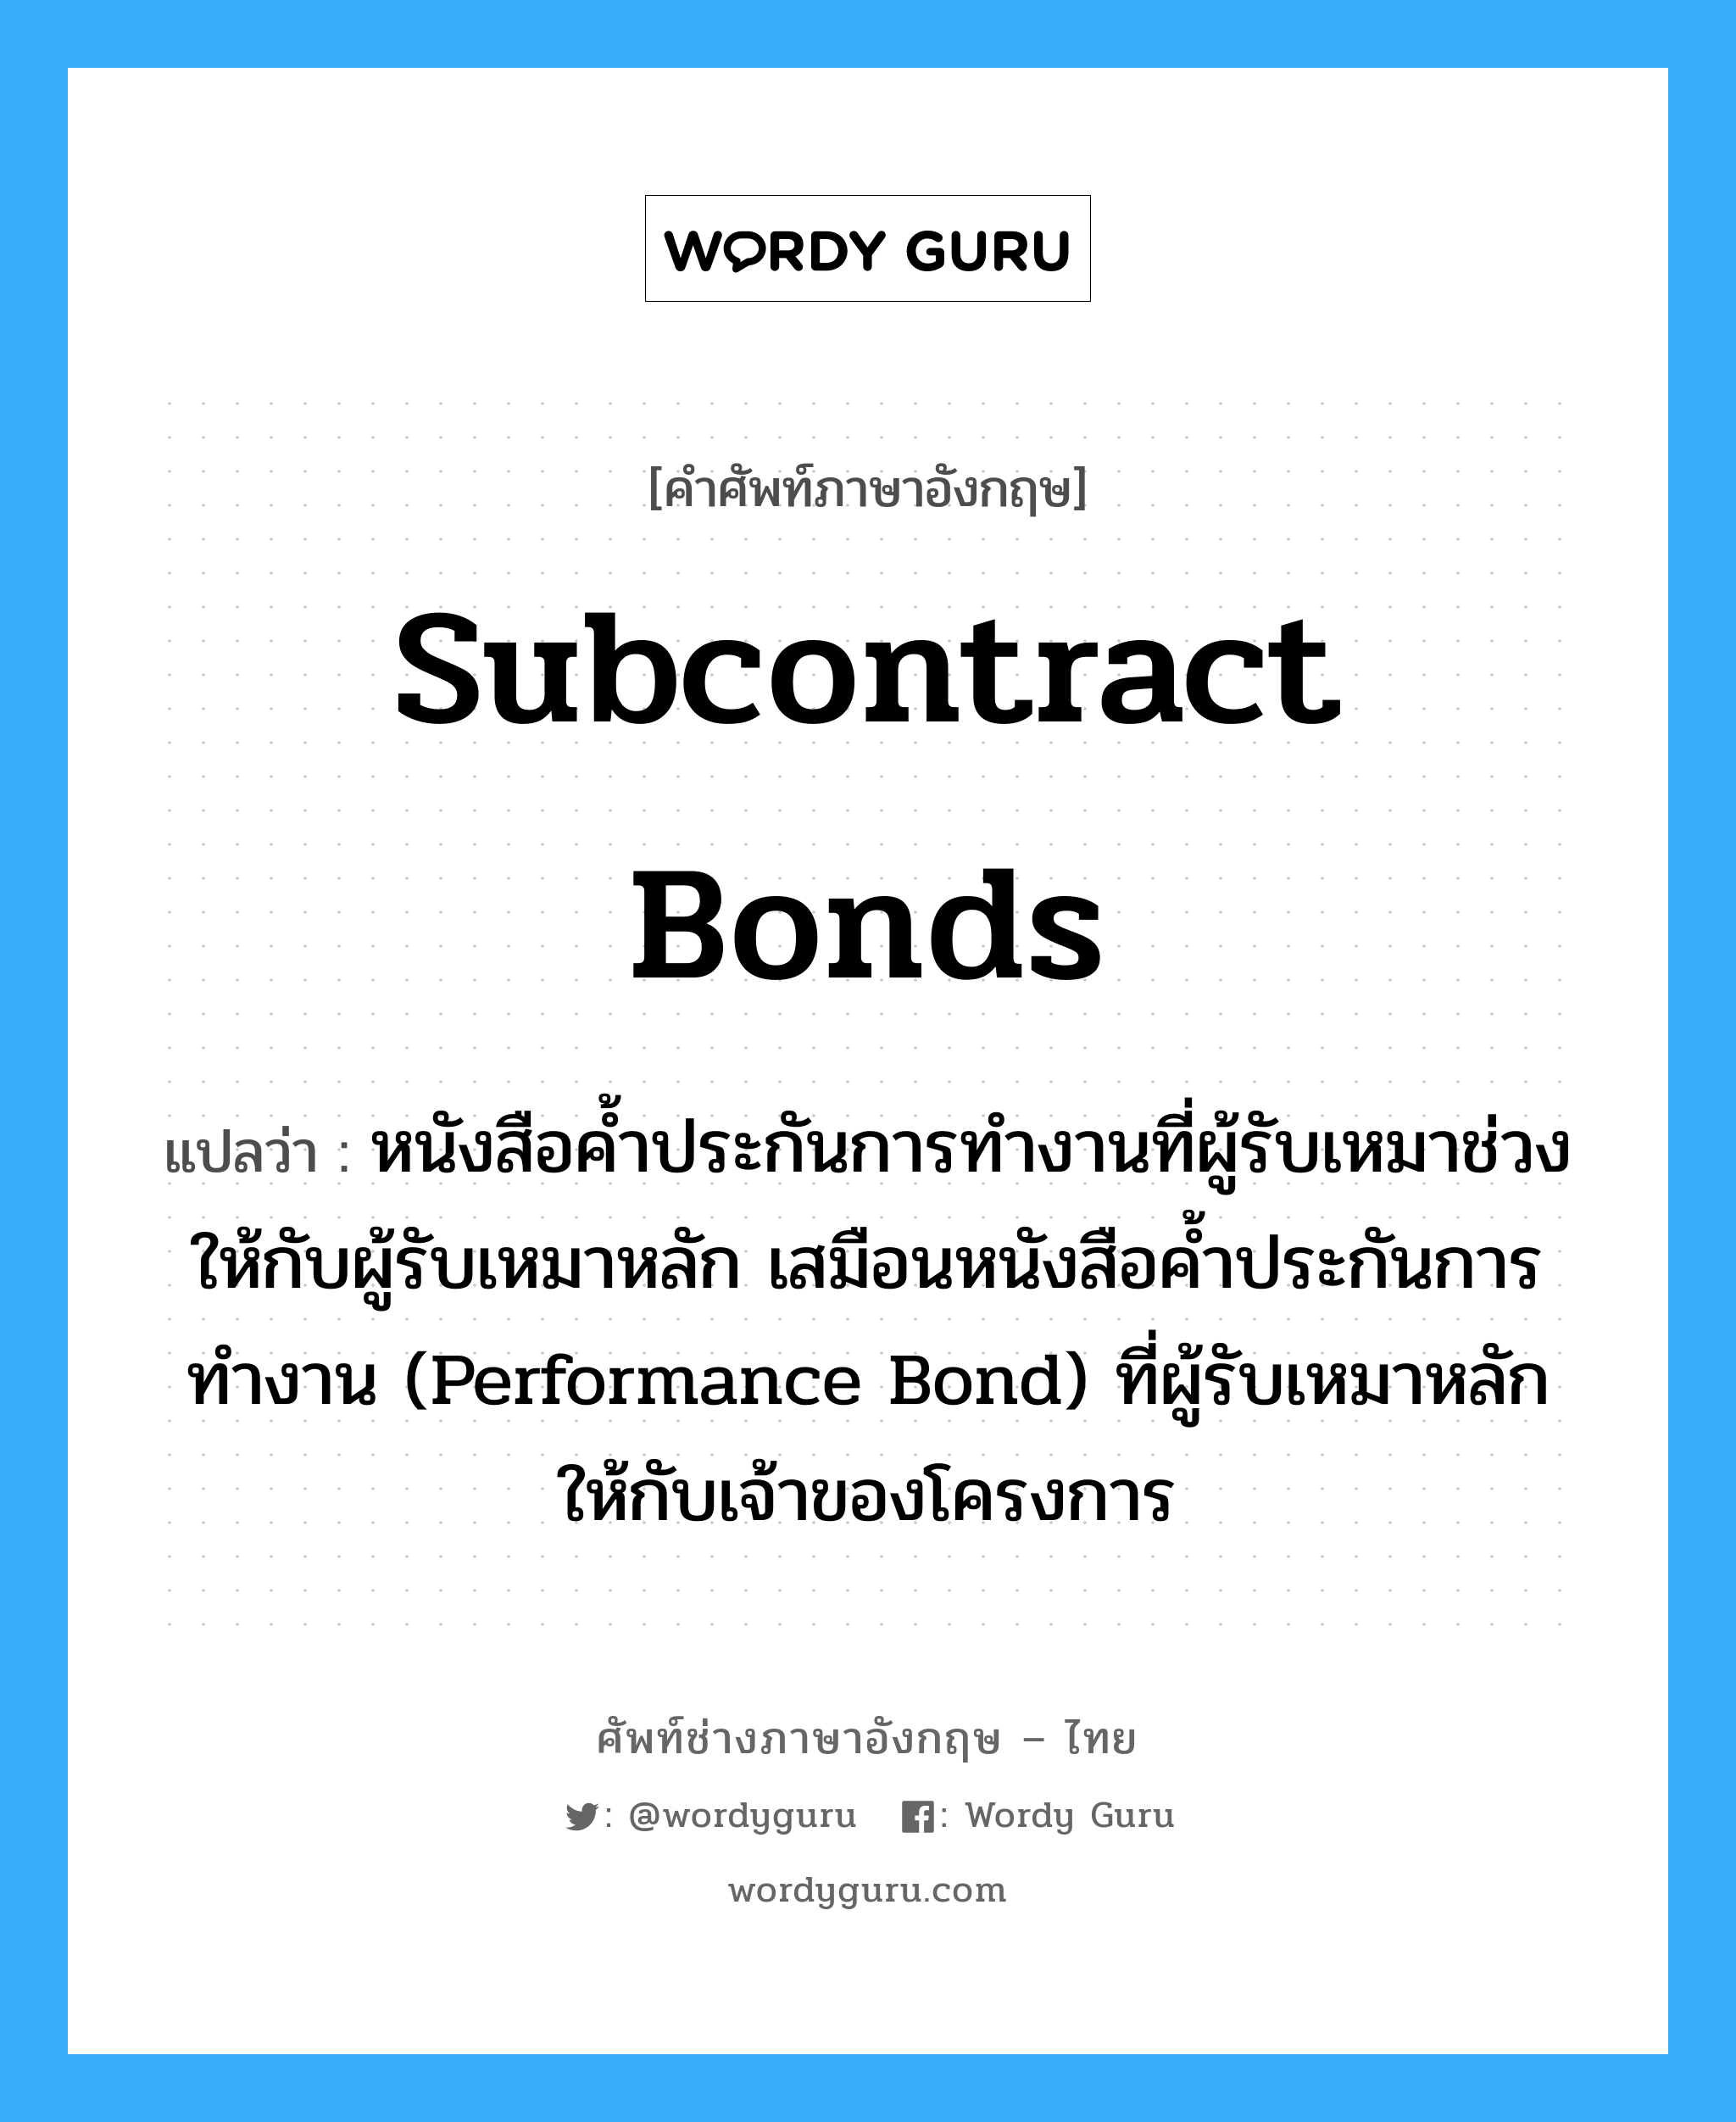 Subcontract Bonds แปลว่า?, คำศัพท์ช่างภาษาอังกฤษ - ไทย Subcontract Bonds คำศัพท์ภาษาอังกฤษ Subcontract Bonds แปลว่า หนังสือค้ำประกันการทำงานที่ผู้รับเหมาช่วงให้กับผู้รับเหมาหลัก เสมือนหนังสือค้ำประกันการทำงาน (Performance Bond) ที่ผู้รับเหมาหลักให้กับเจ้าของโครงการ